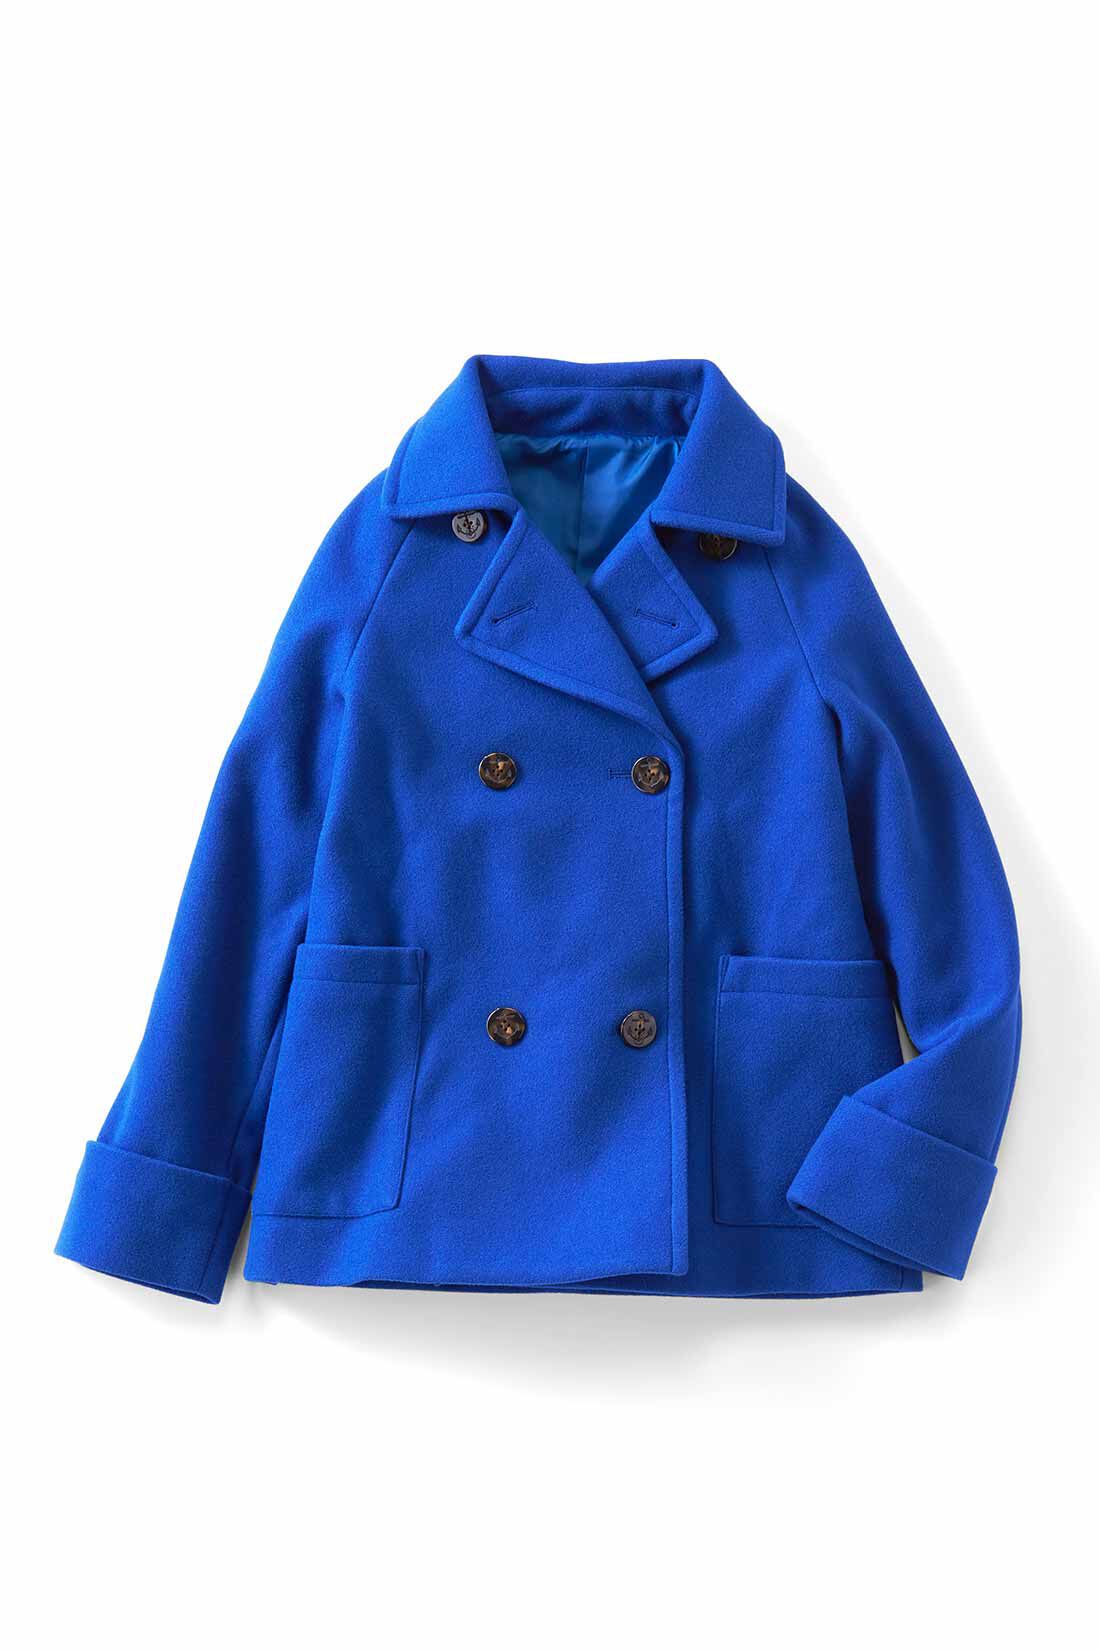 IEDIT[イディット] 着映えカラーのショート丈こなれPコート〈ブルー 